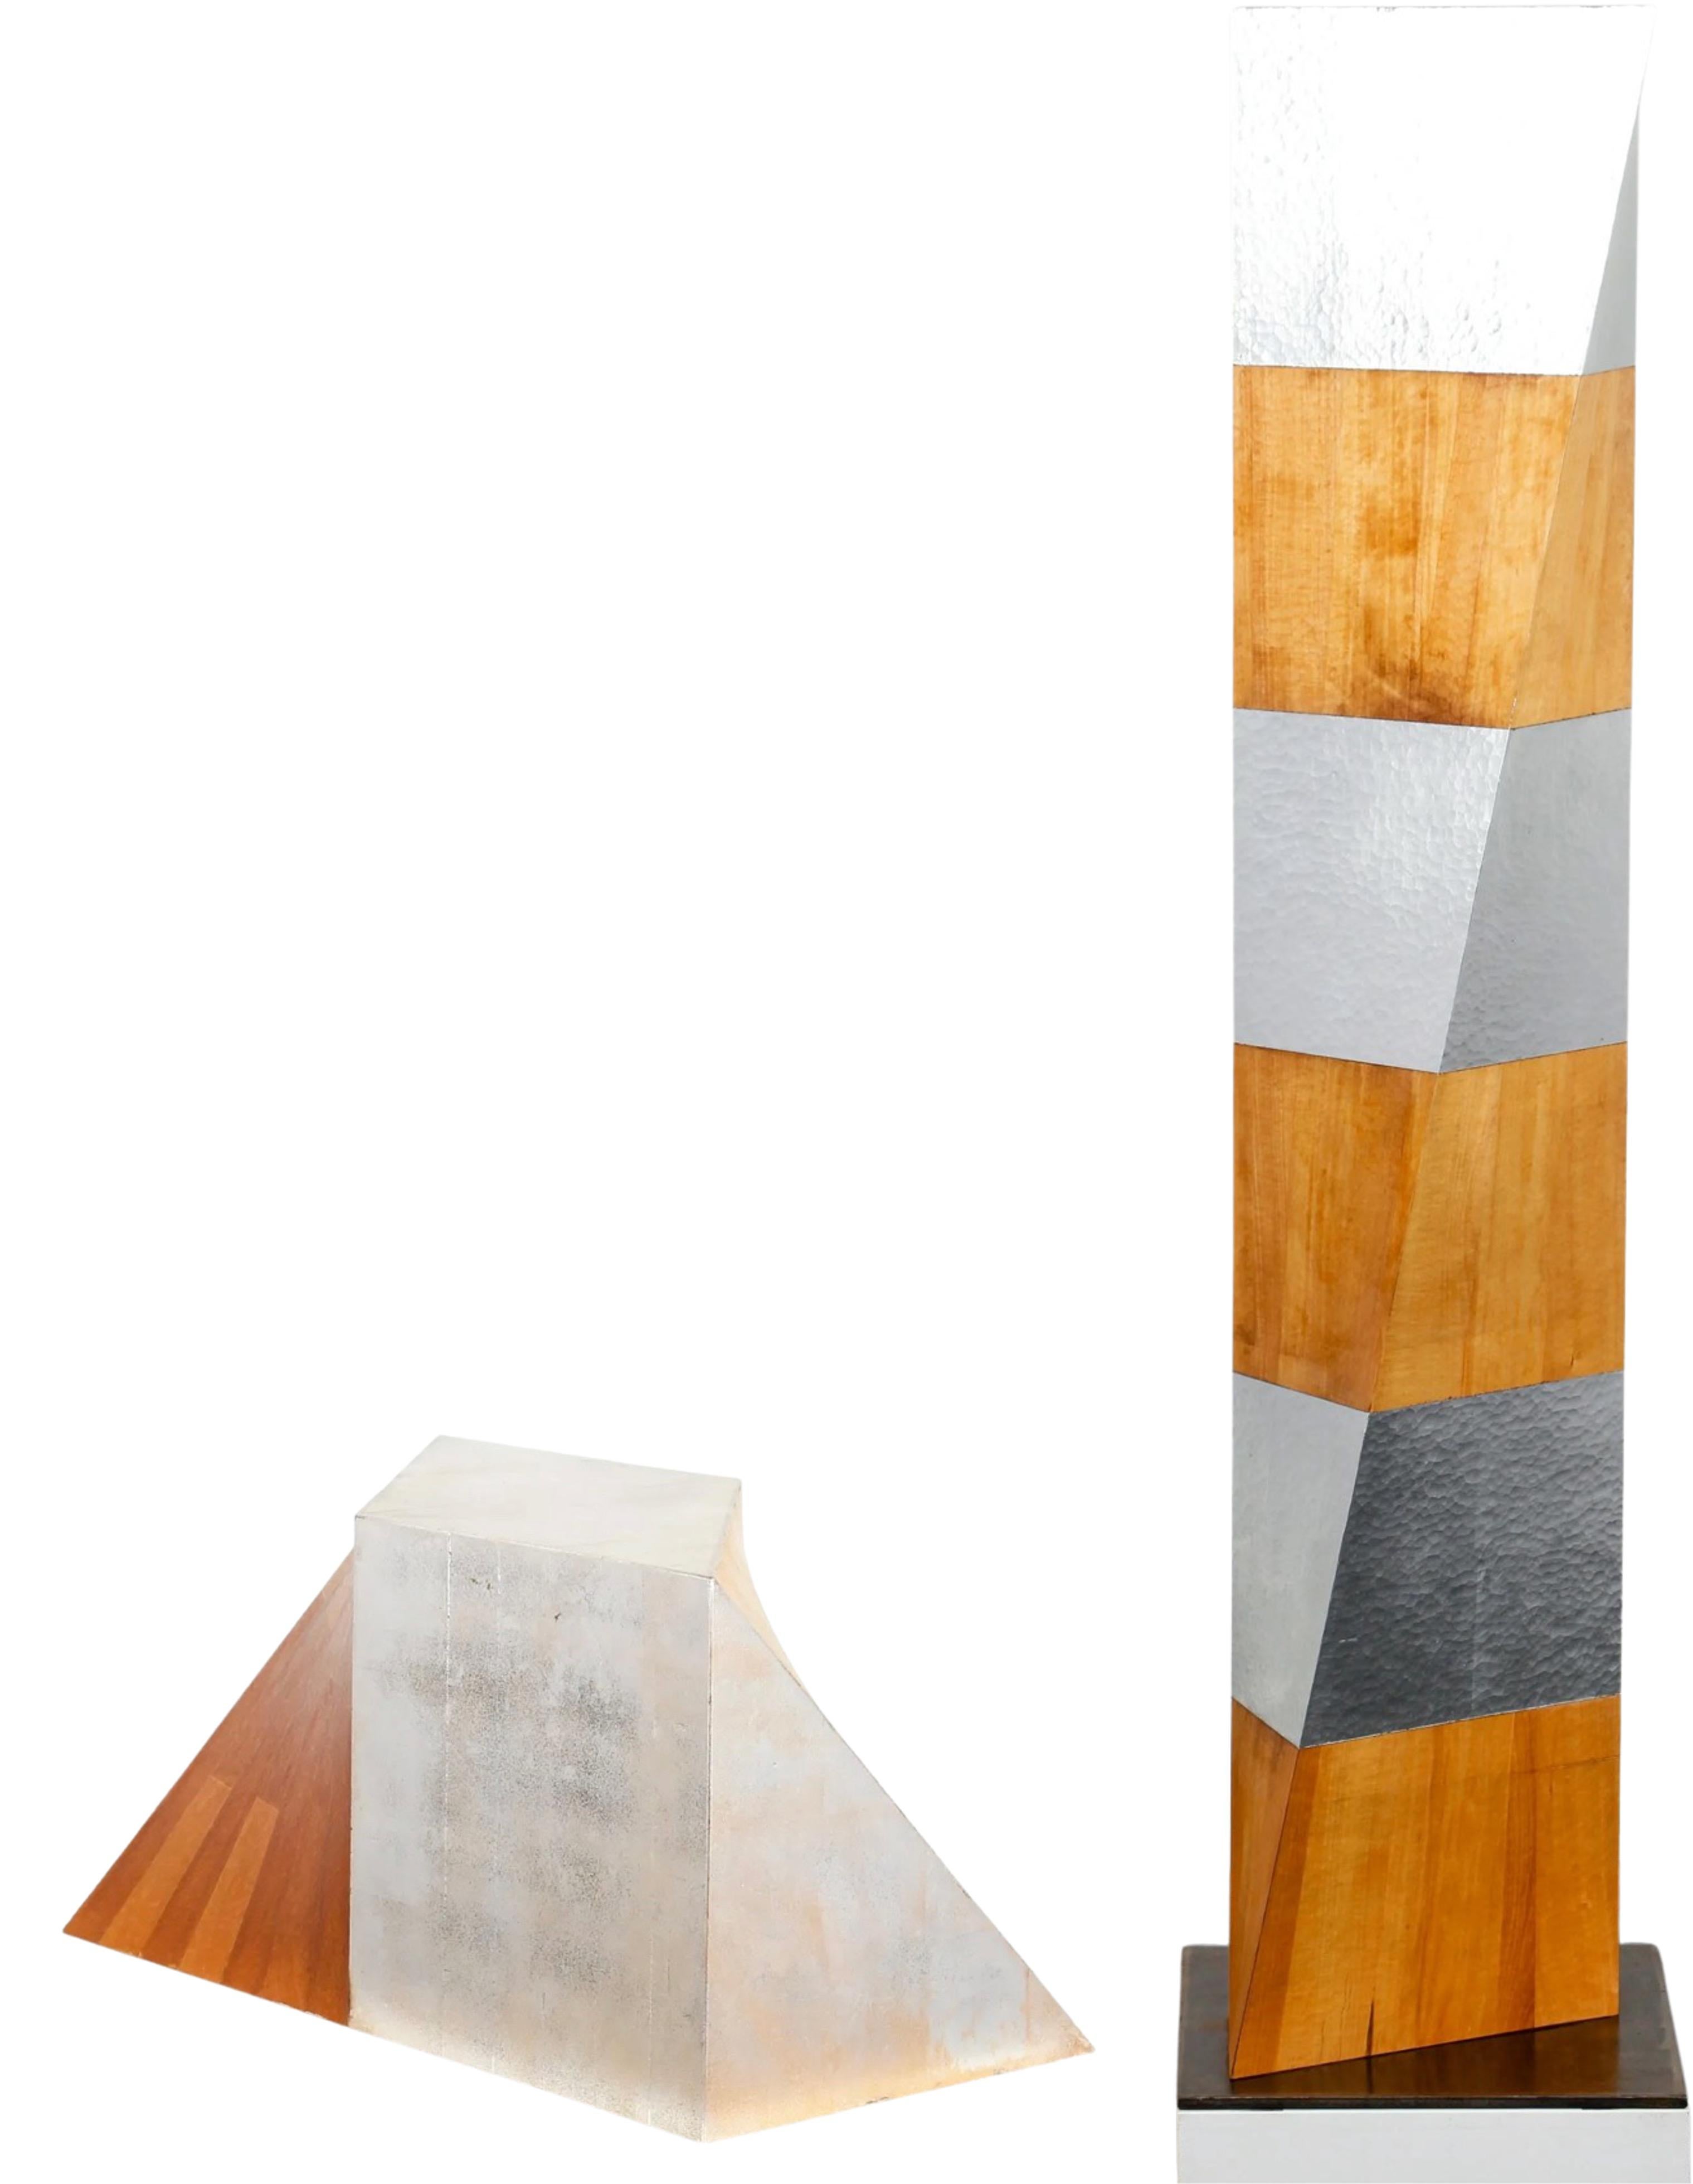 Eine zweiteilige Skulptur des Künstlers Kevin O'Toole. Sie sind beide aus massivem Ahornholz und Blattsilber gefertigt. Das große Exemplar trägt die Signatur und den Titel am oberen Rand. Das kurze Exemplar enthält die Unterschrift und den Titel am